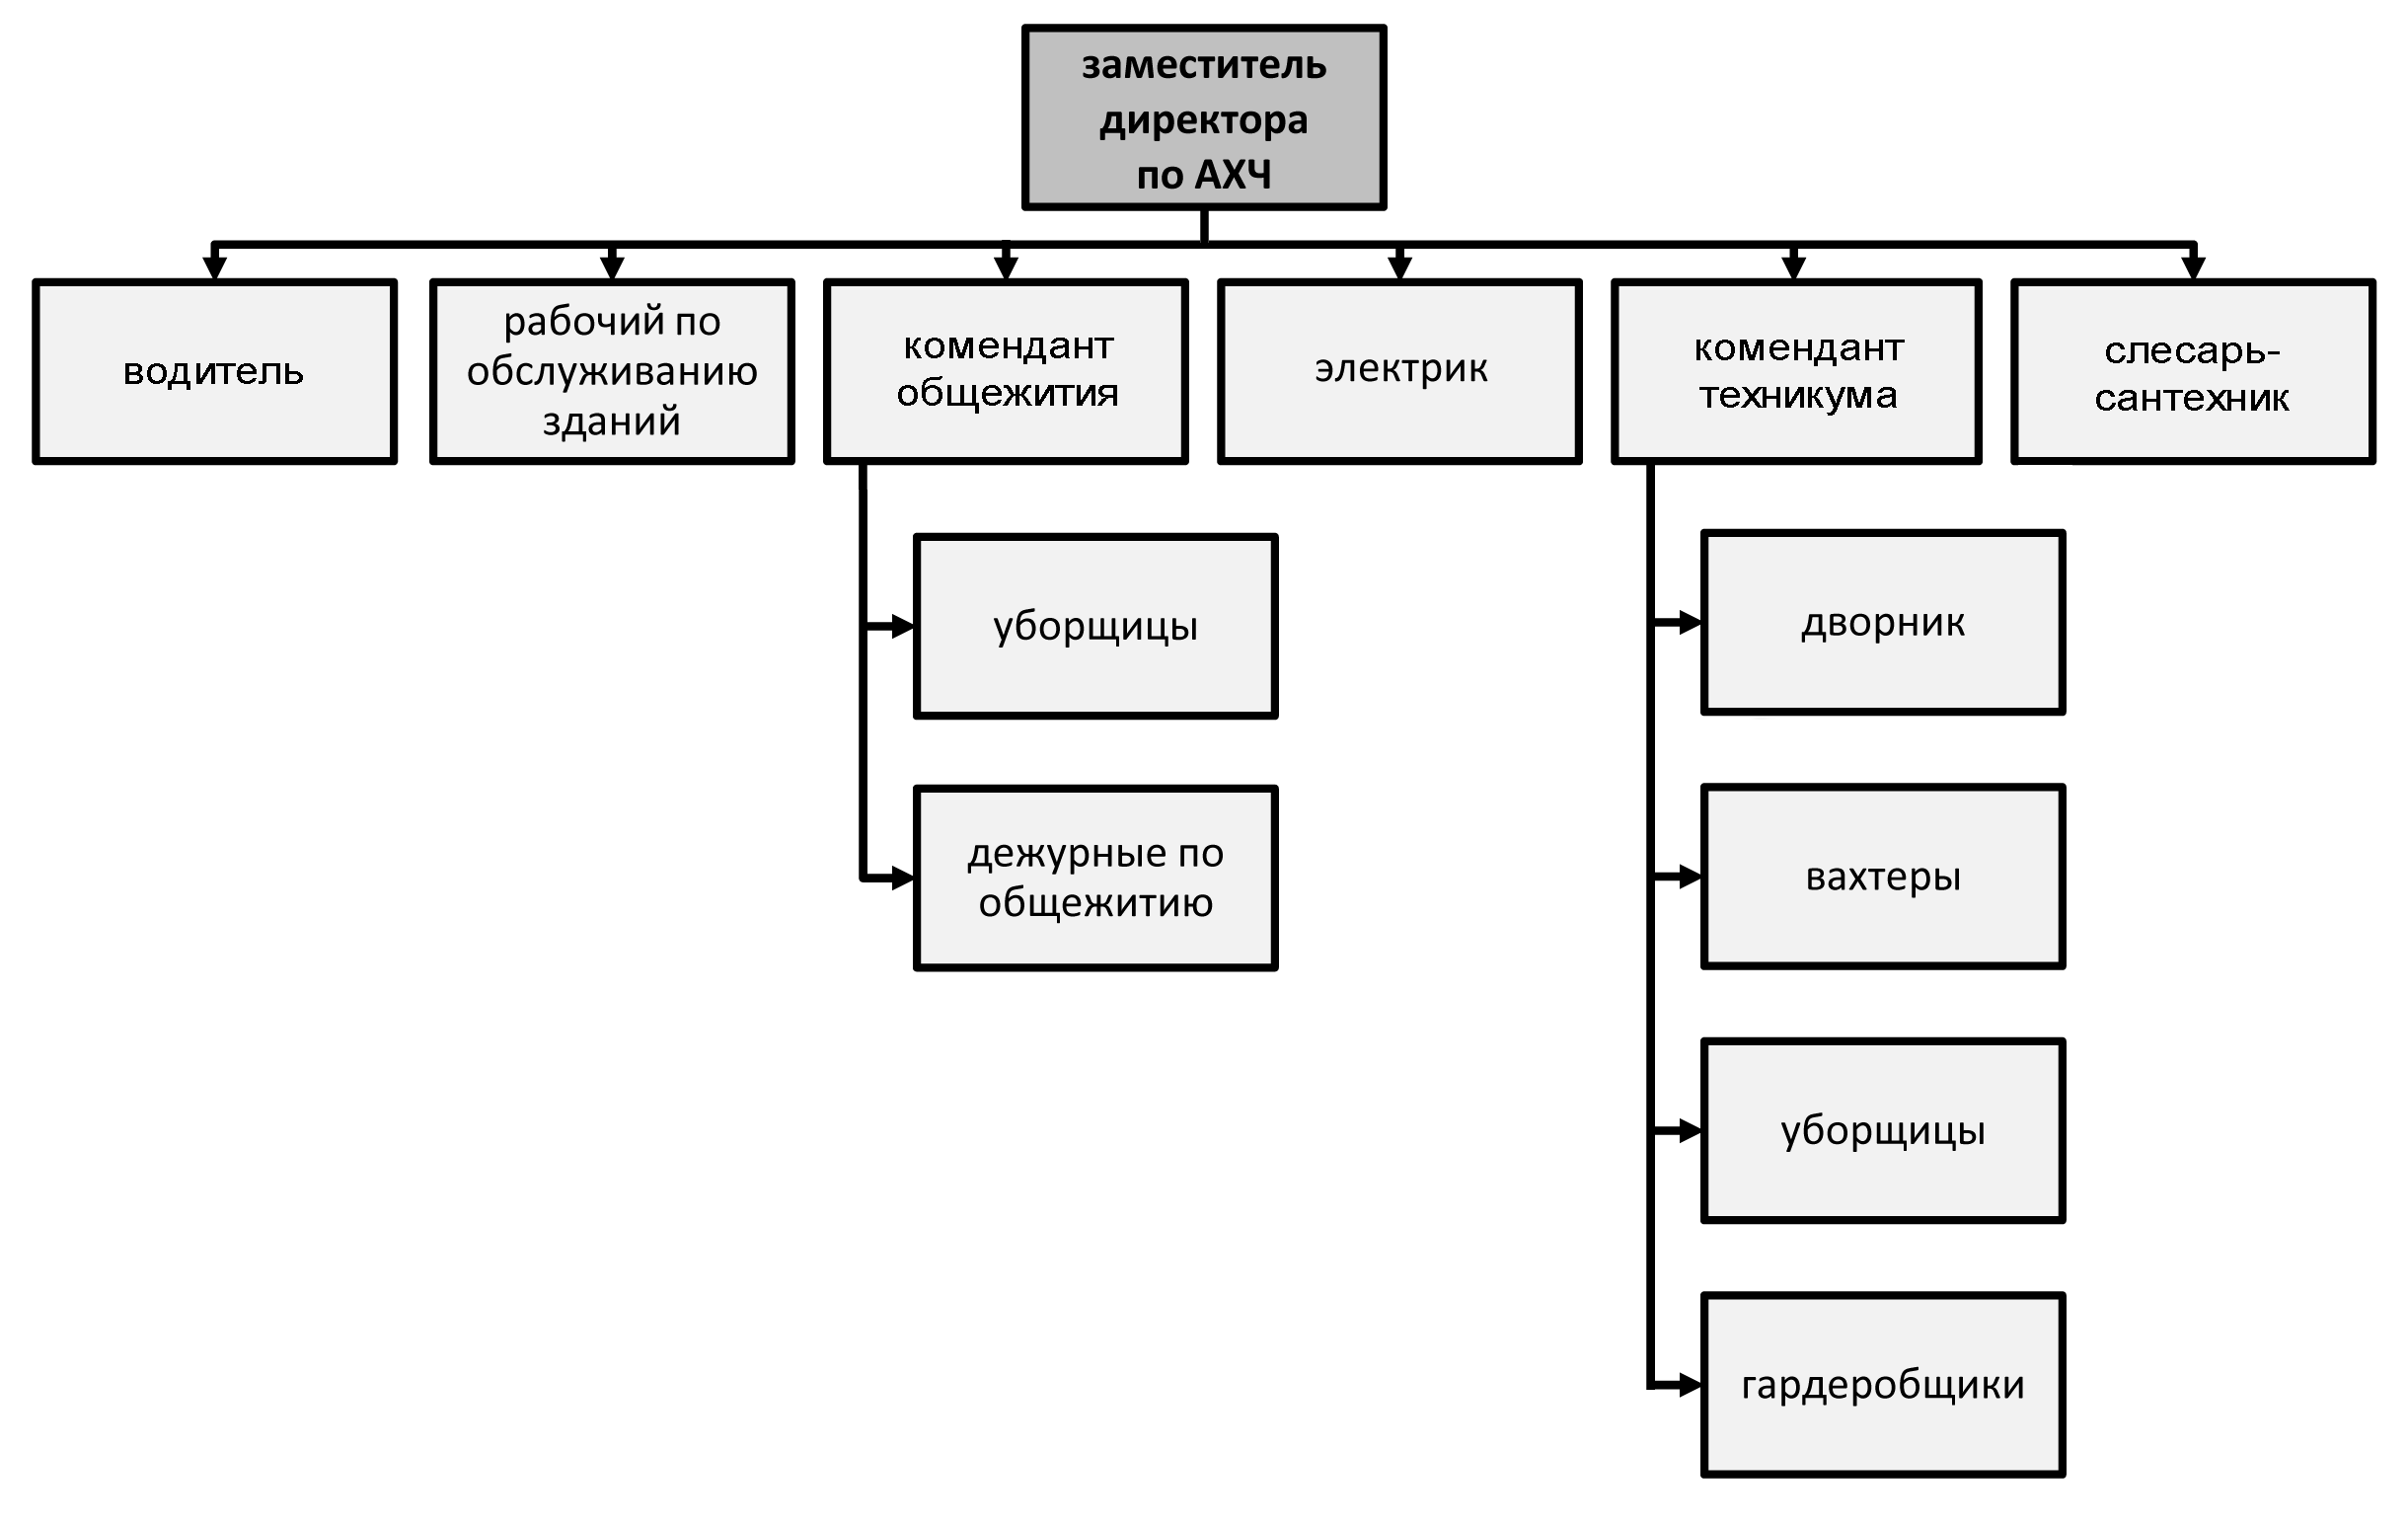 Структура службы АХЧ